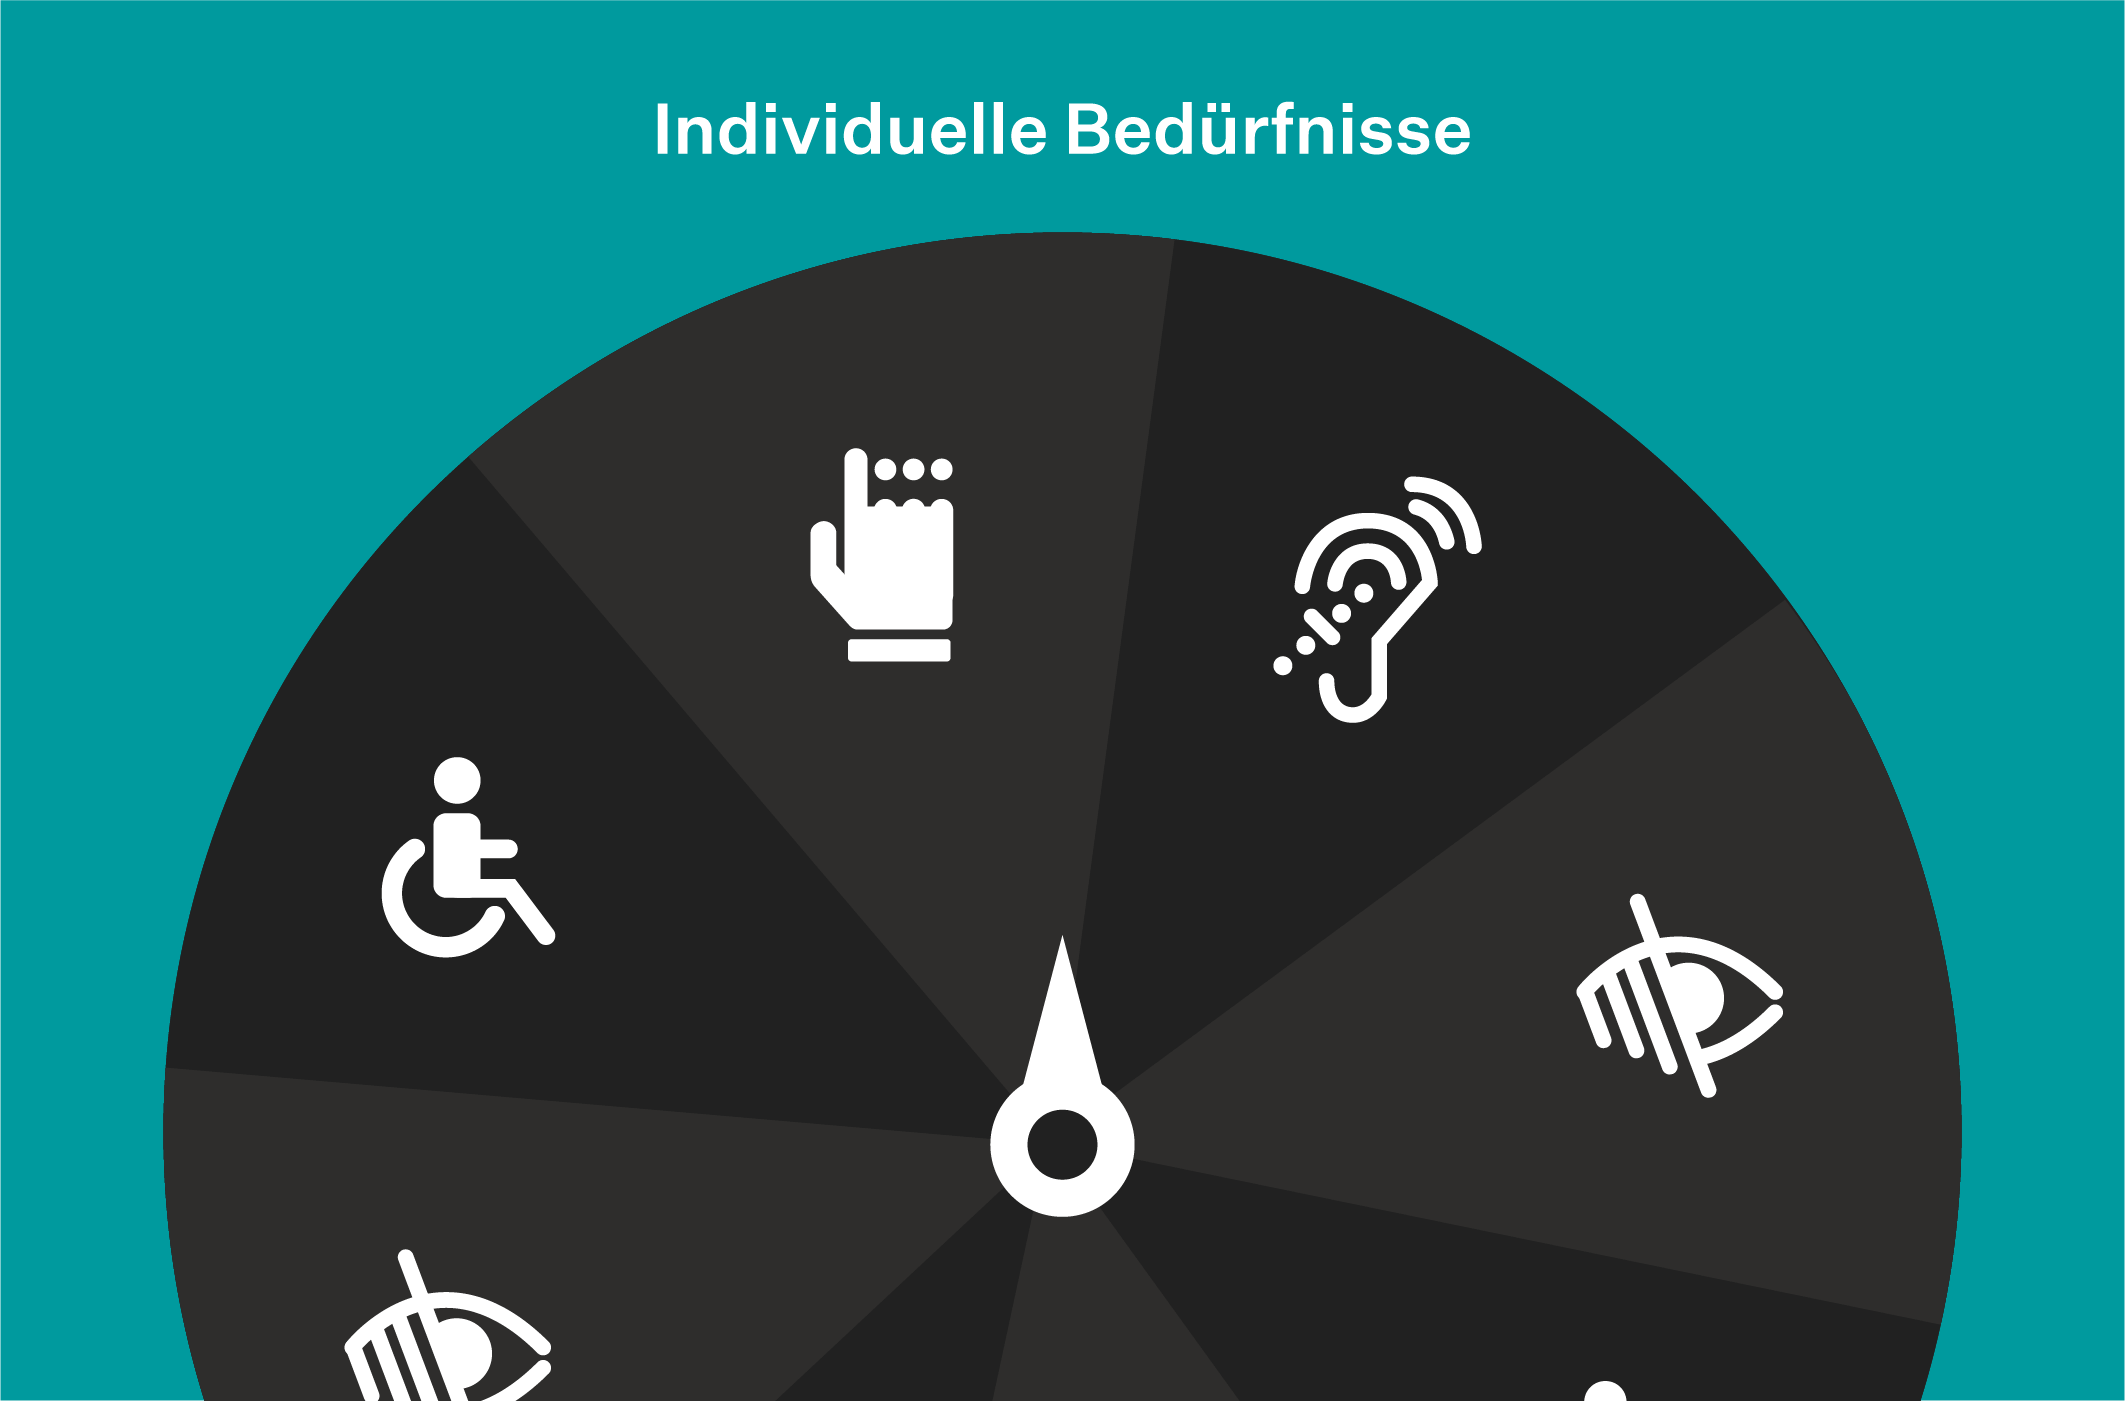 Symbole der Web Accessibility weisen Nutzer:innen auf Zugänglichkeit für alle hin